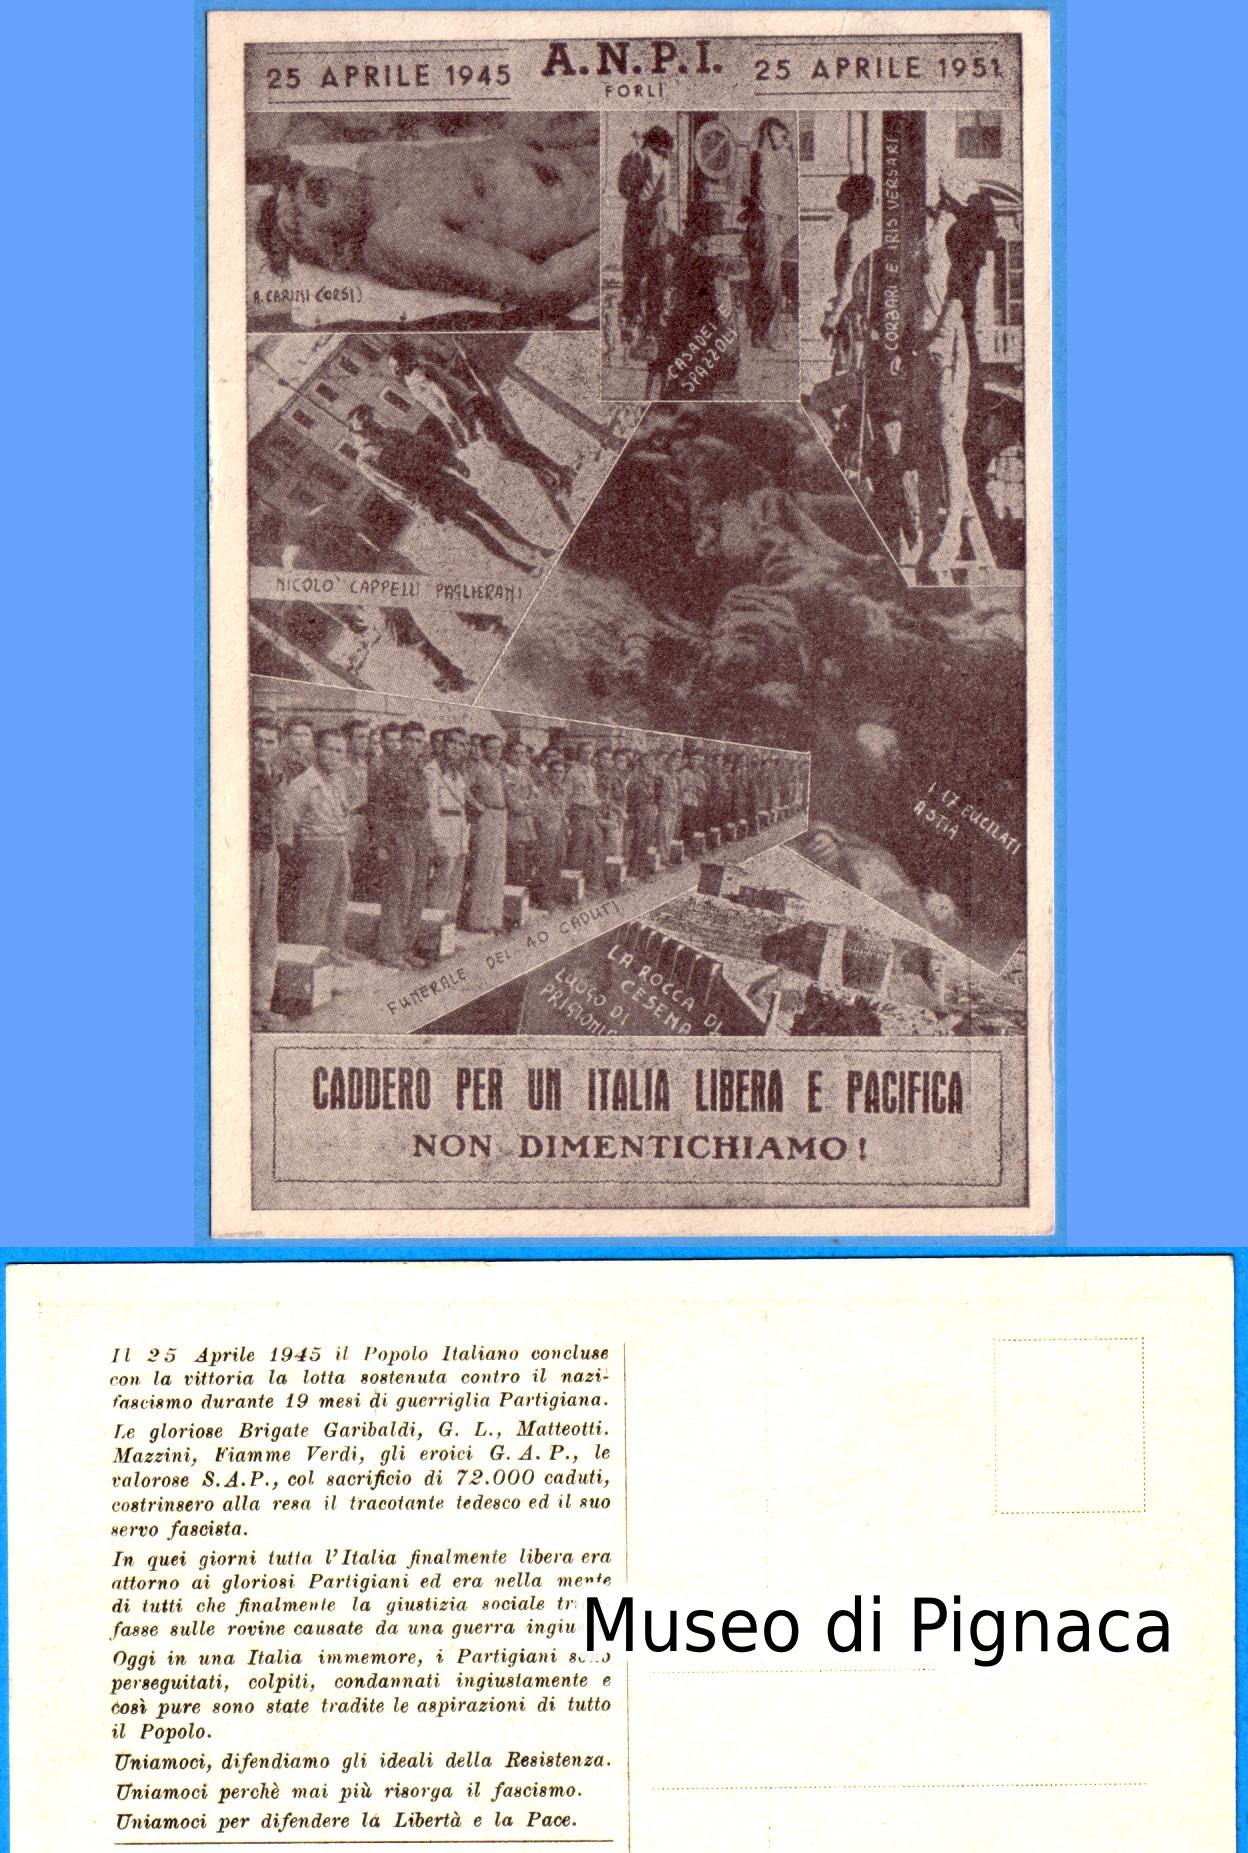 1951 nv - ANPI Forlì - commemorativa Caduti Partigiani per un'Italia Libera e Pacifica